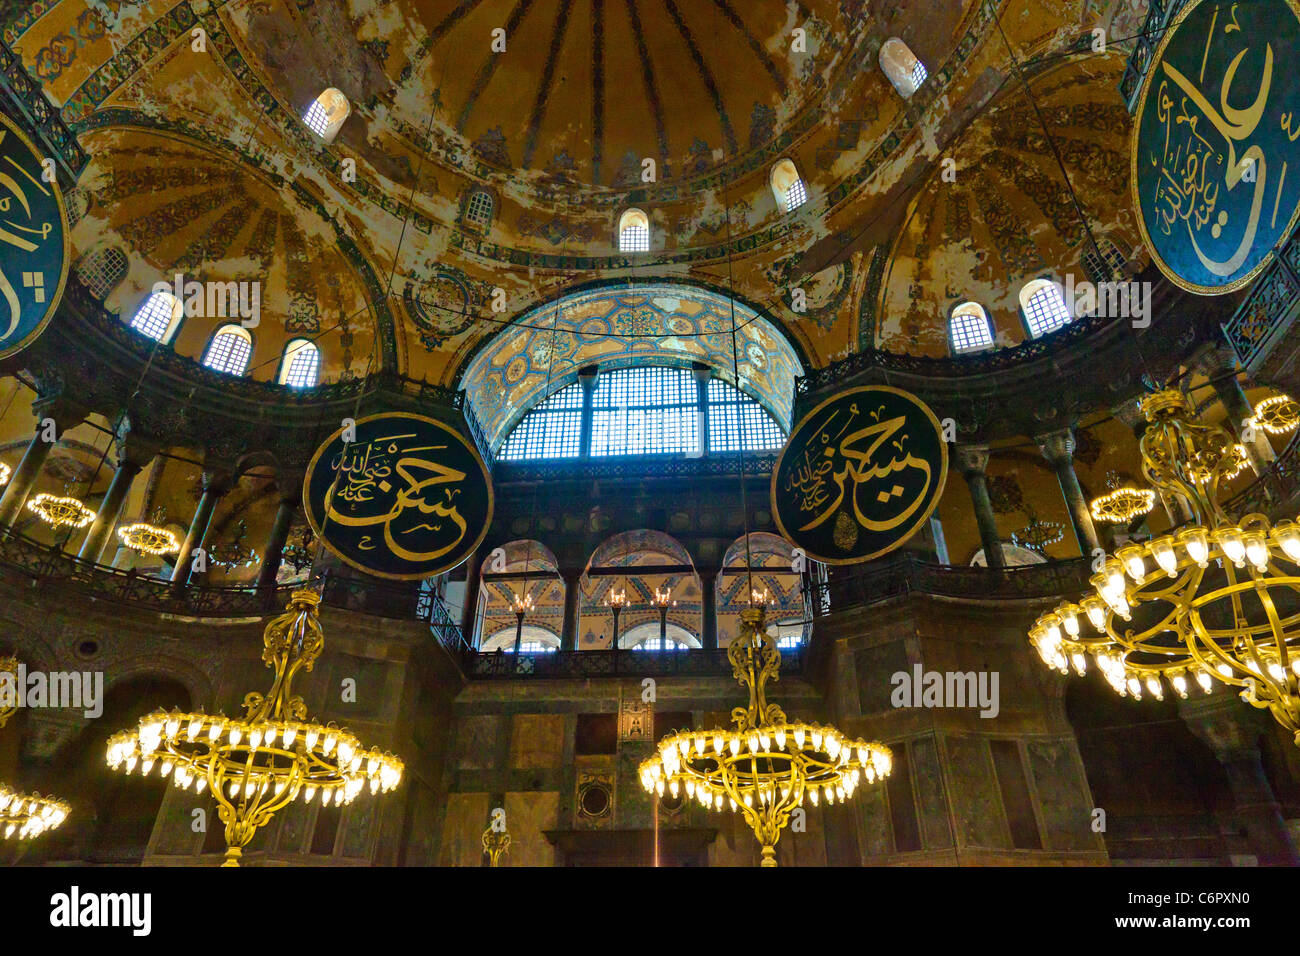 Balcon avec arcs, plafond peint et de chandeliers.Intérieur de la mosquée Sainte-Sophie et le musée d'Istanbul, en Turquie. Banque D'Images